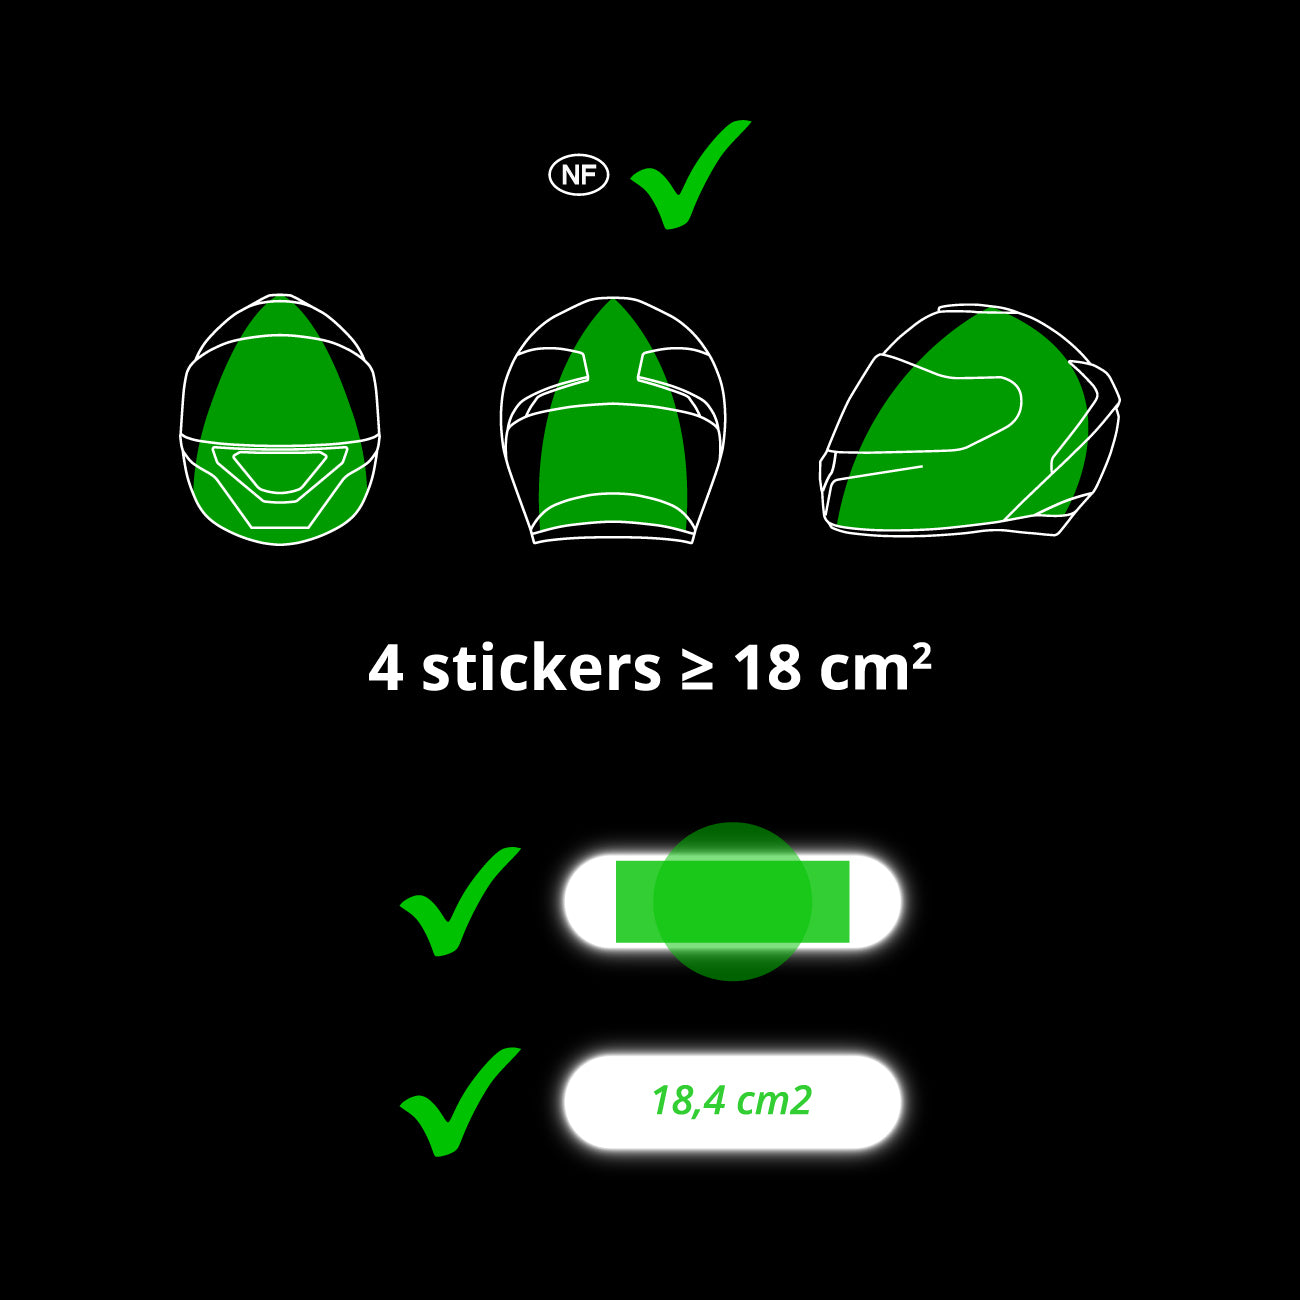 Stickers Casque Moto Réfléchissant - Gamme 3M / Oracal - GTStickers